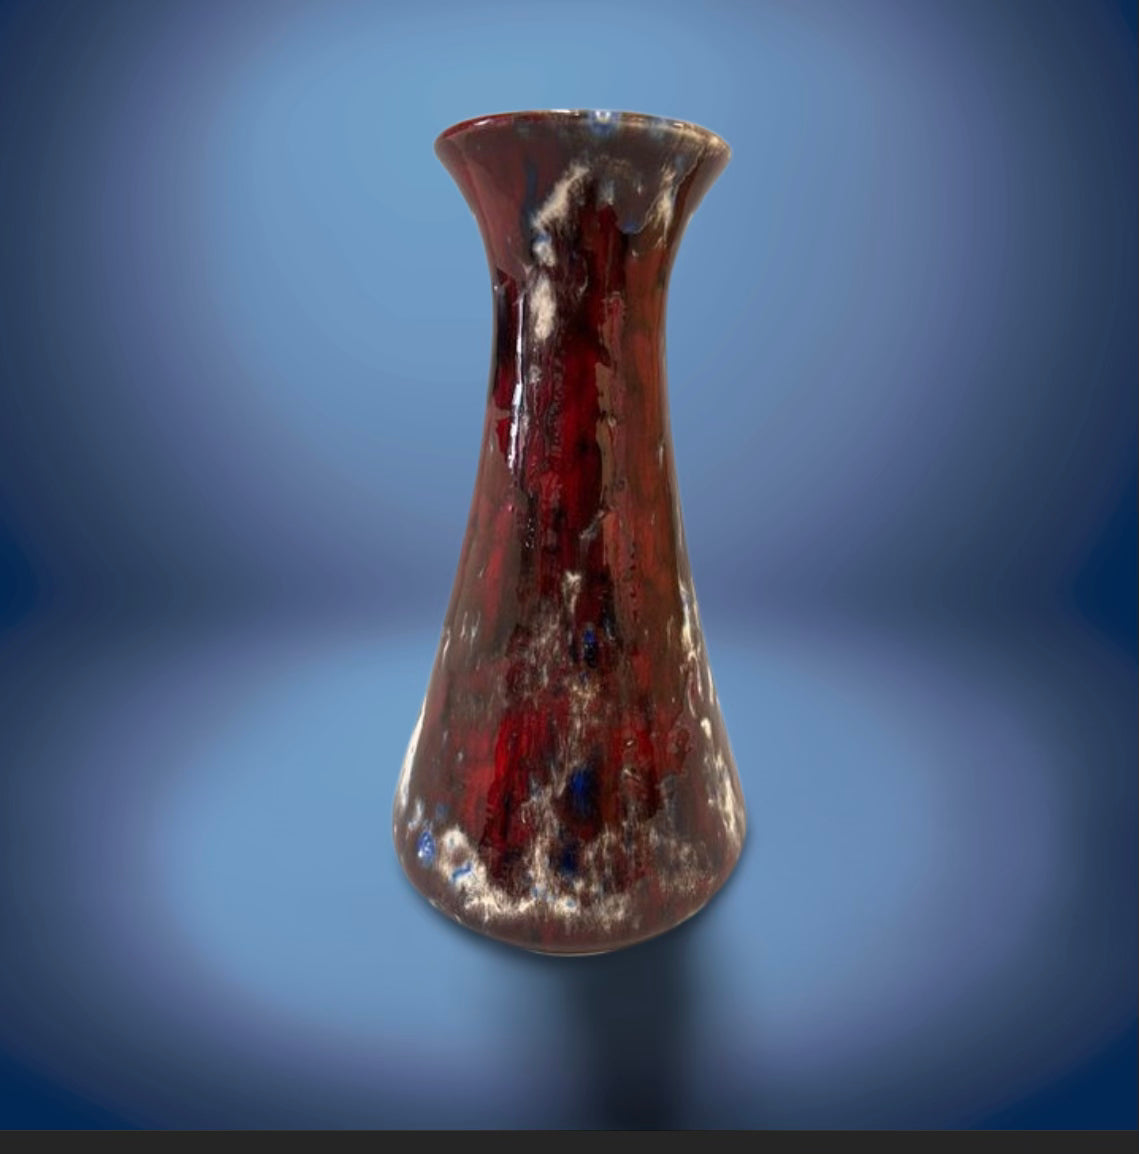 Red Marsmonde glaze effect vase